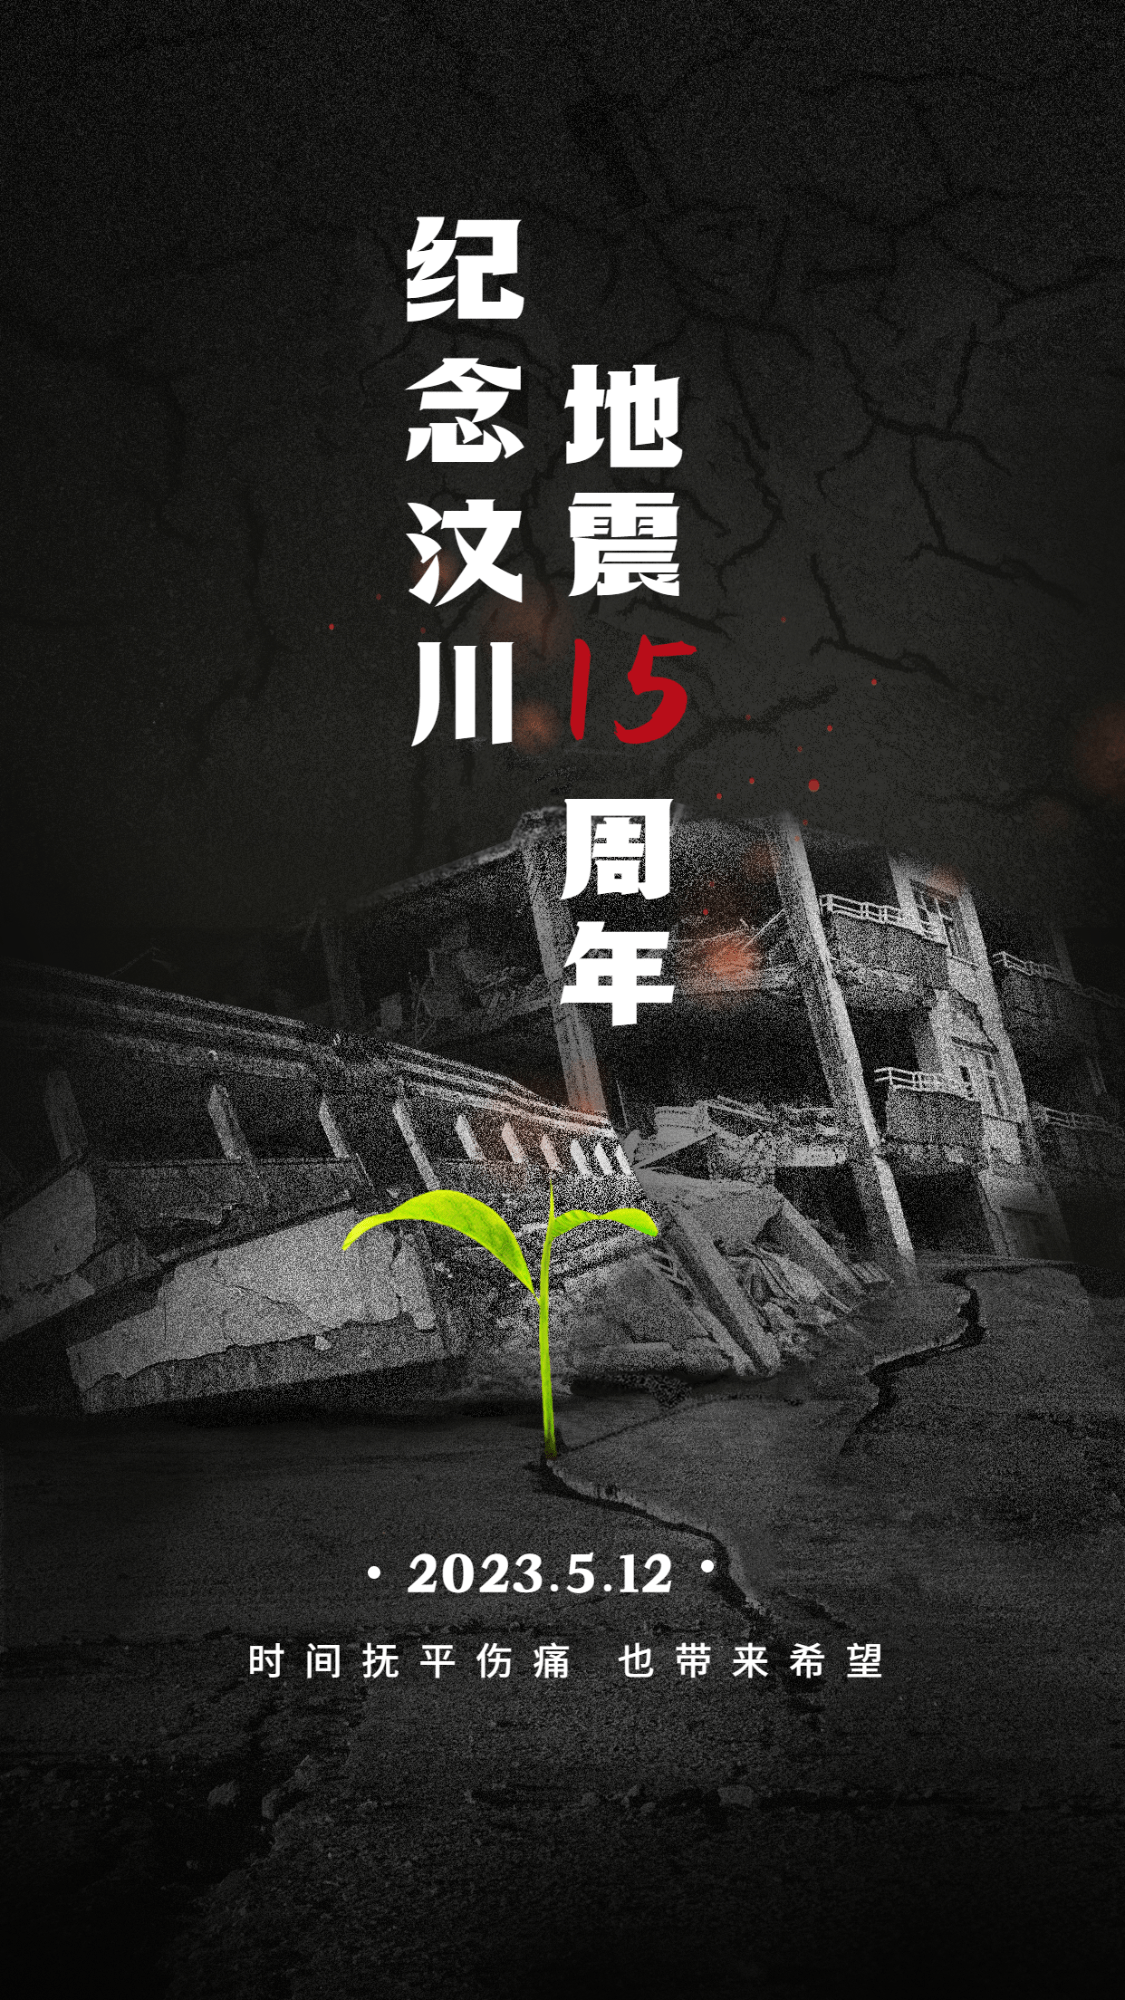 汶川地震纪念日节日宣传实景合成手机海报